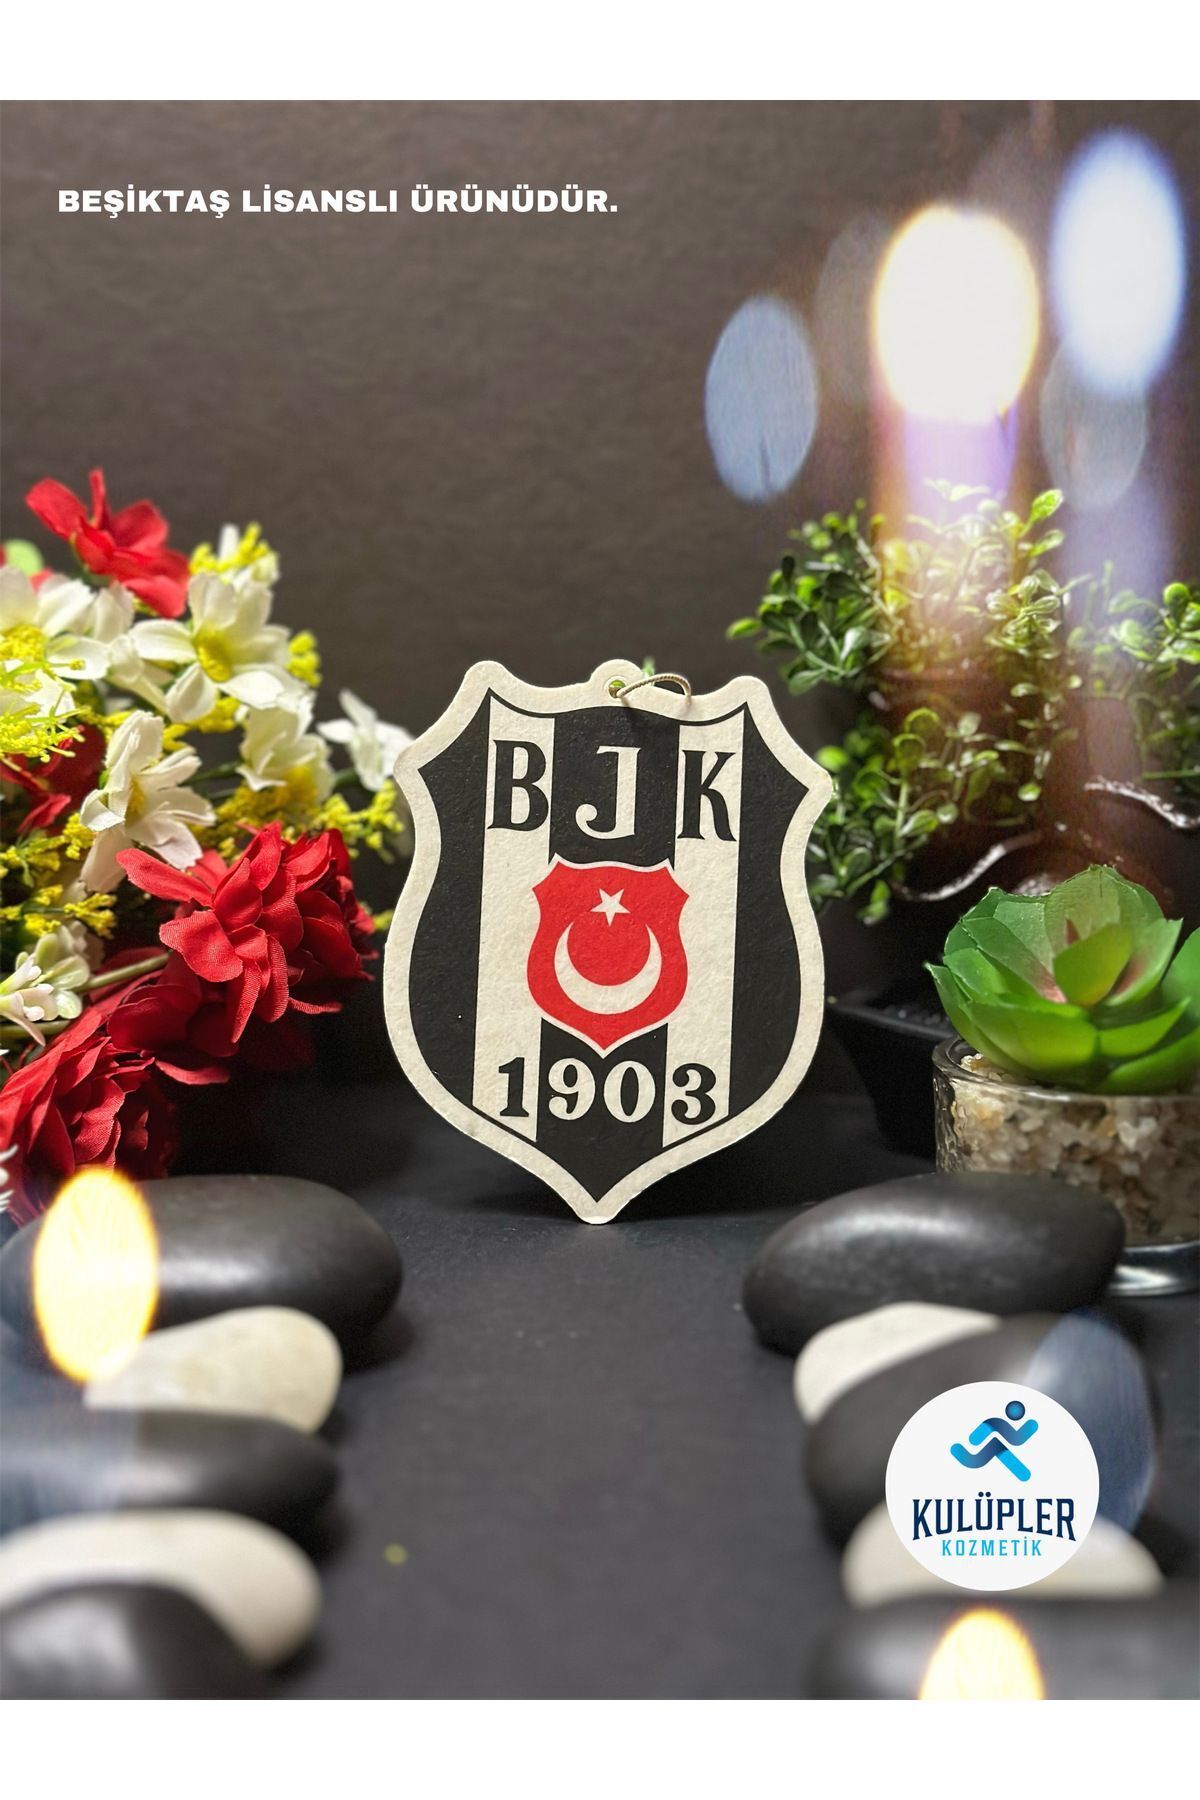 Beşiktaş Oto Kokusu Lisanslı / Bahar Kokusu